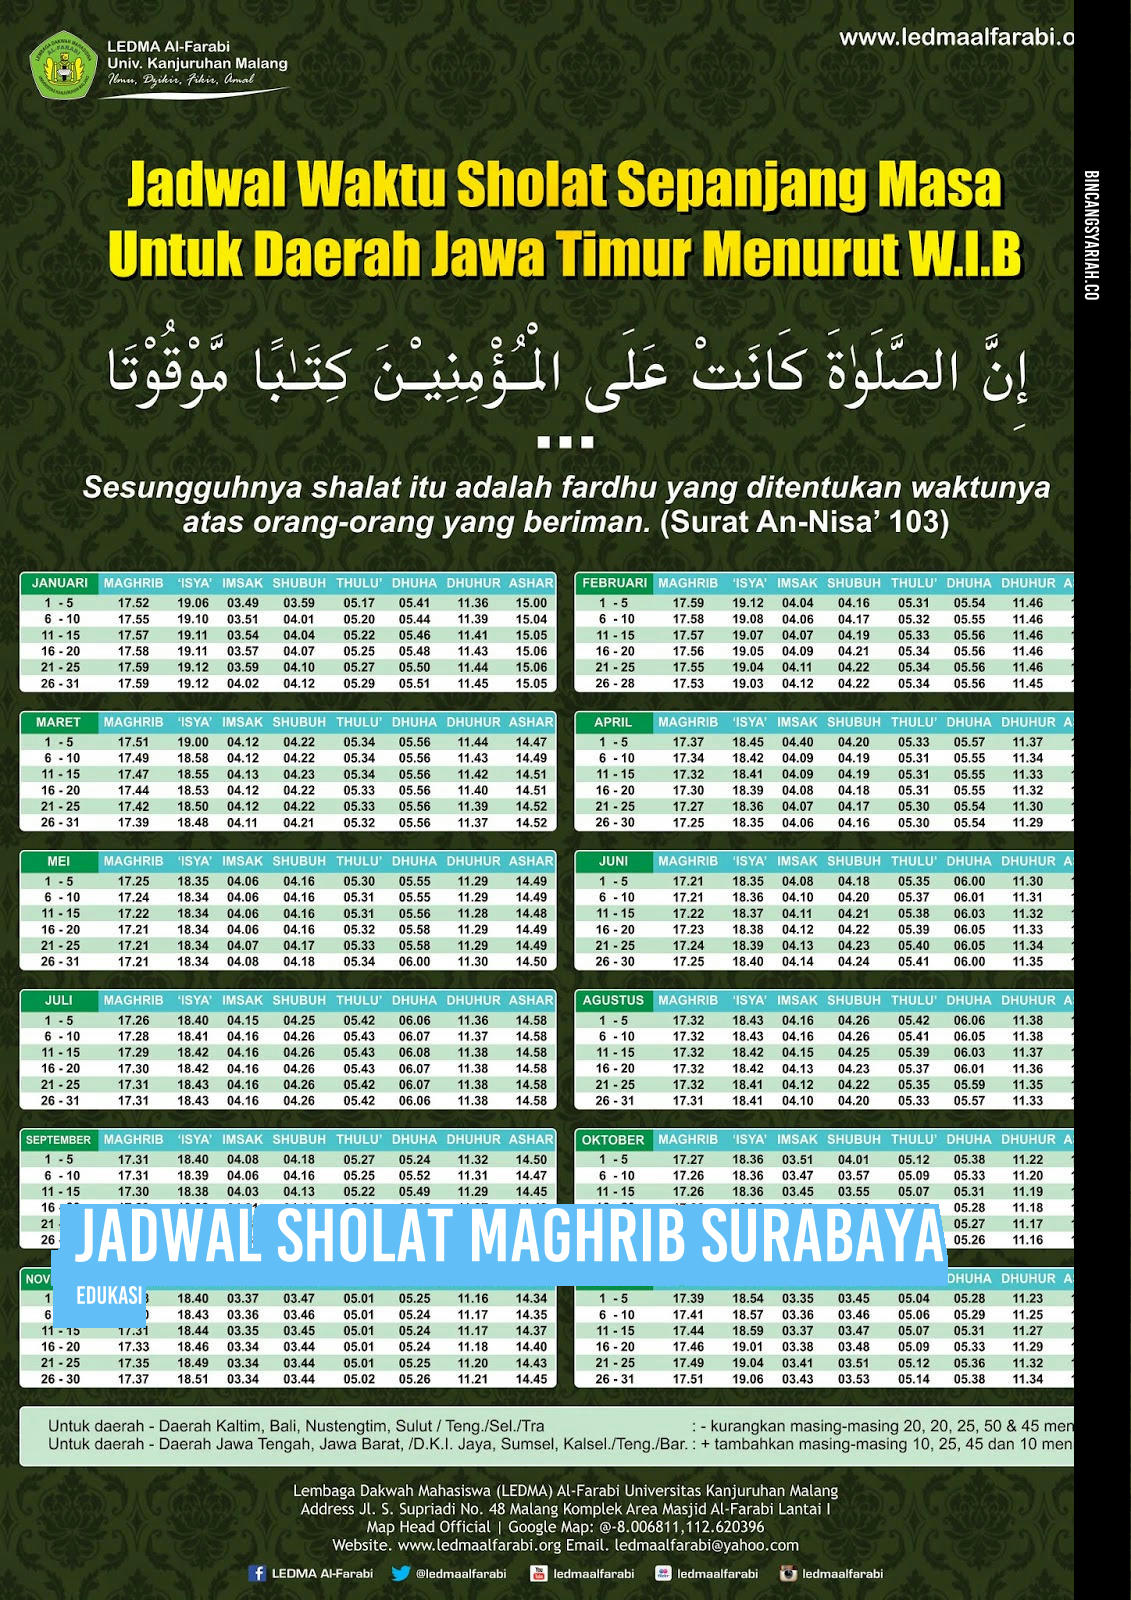 Jadwal Sholat Maghrib Surabaya